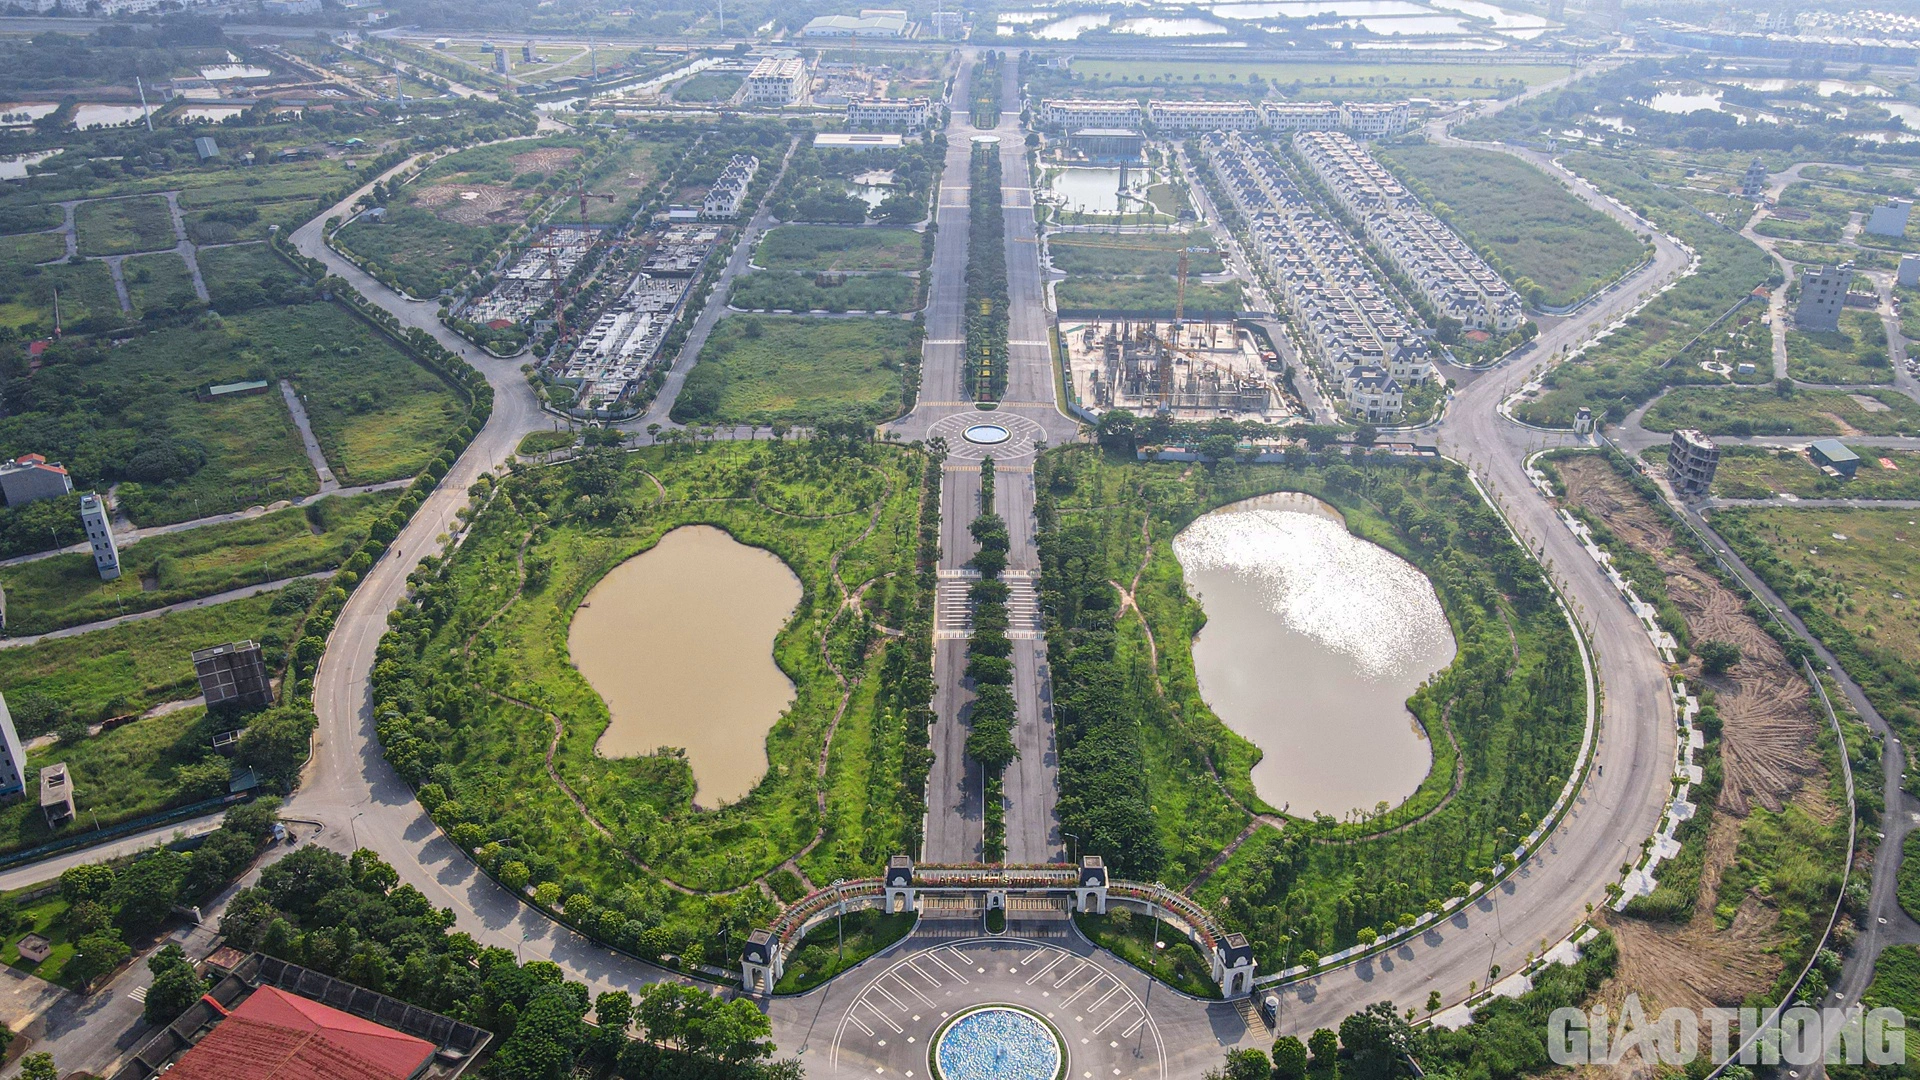 Theo tìm hiểu của PV, Khu đô thị An Lạc (An Lạc Green Symphony) tiền thân là dự án Khu đô thị Đại học Vân Canh, được UBND tỉnh Hà Tây (cũ) giao Công ty CP Đầu tư An Lạc làm chủ đầu tư (năm 2007).